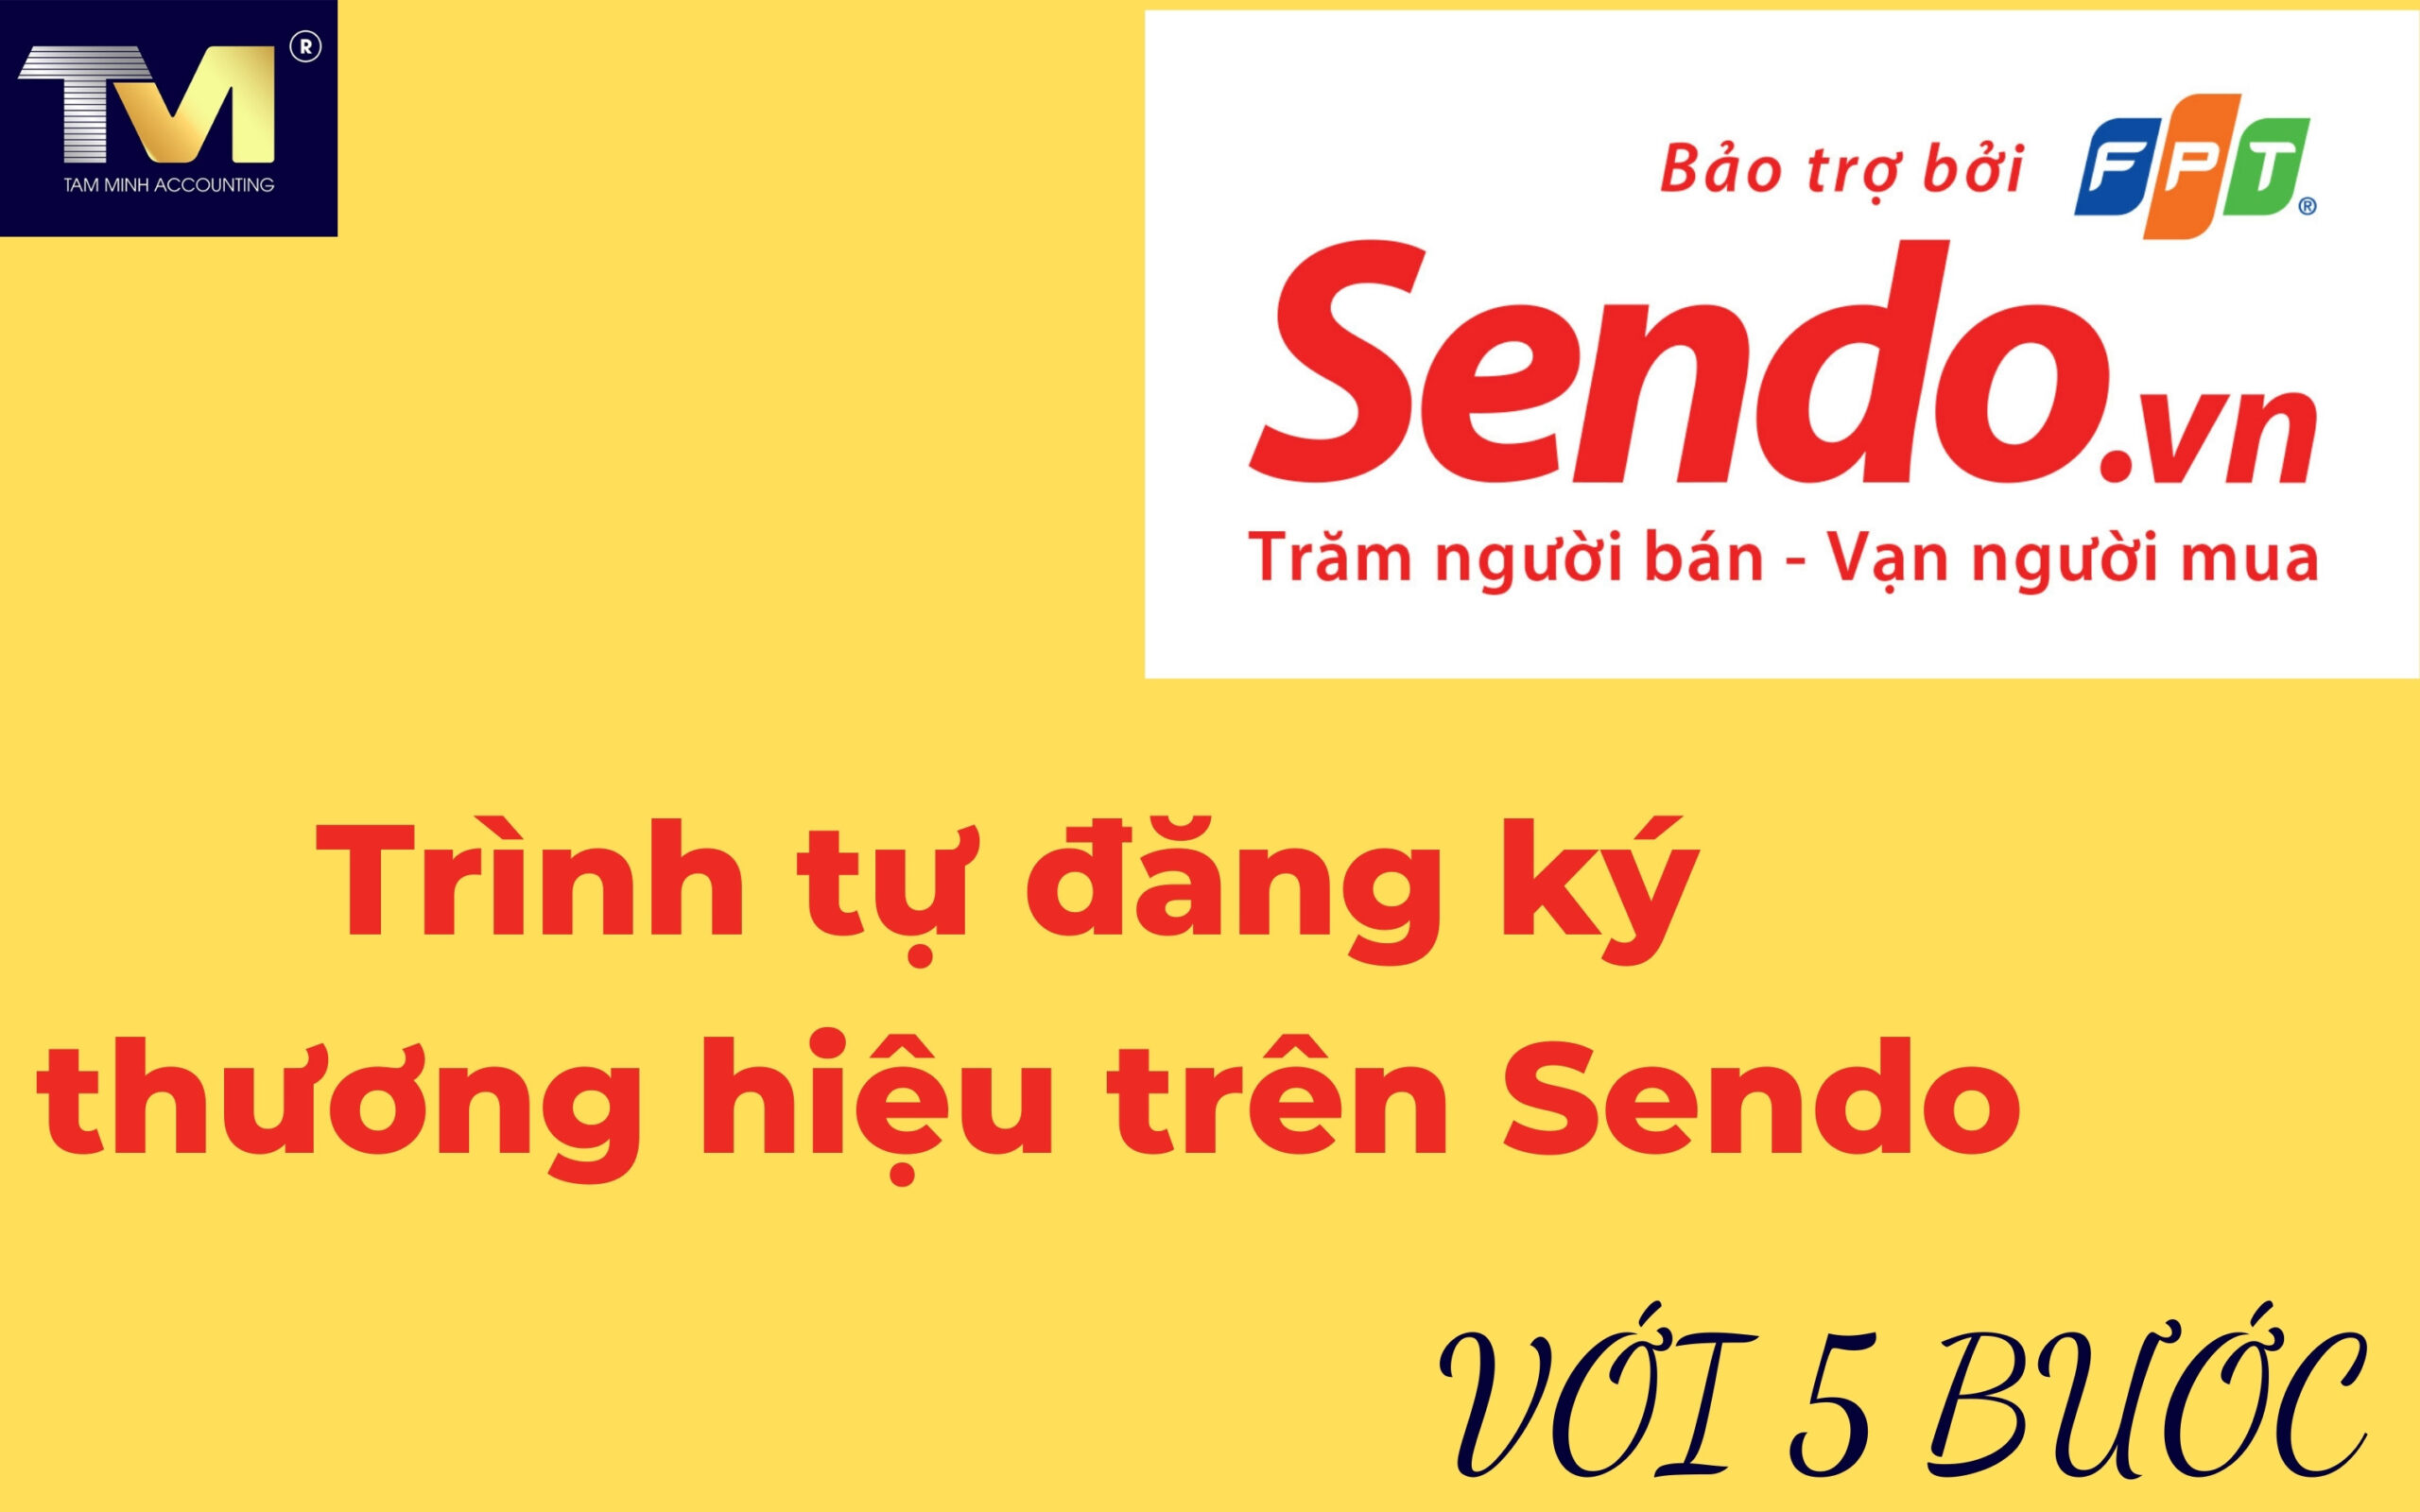 đăng ký nhãn hiệu cho sản phẩm trên trang Sendo.vn